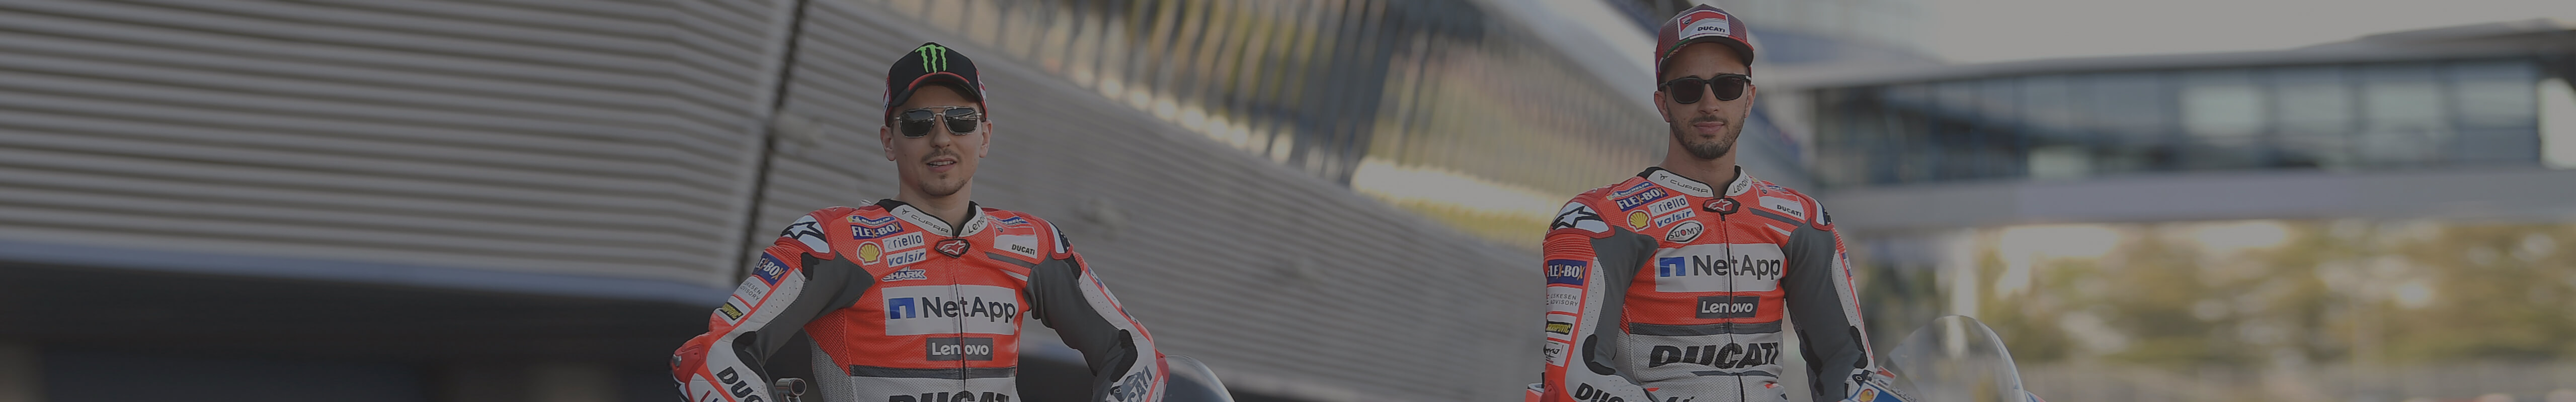 CUPRA als neuer Sponsor von Ducati bei der Moto GP